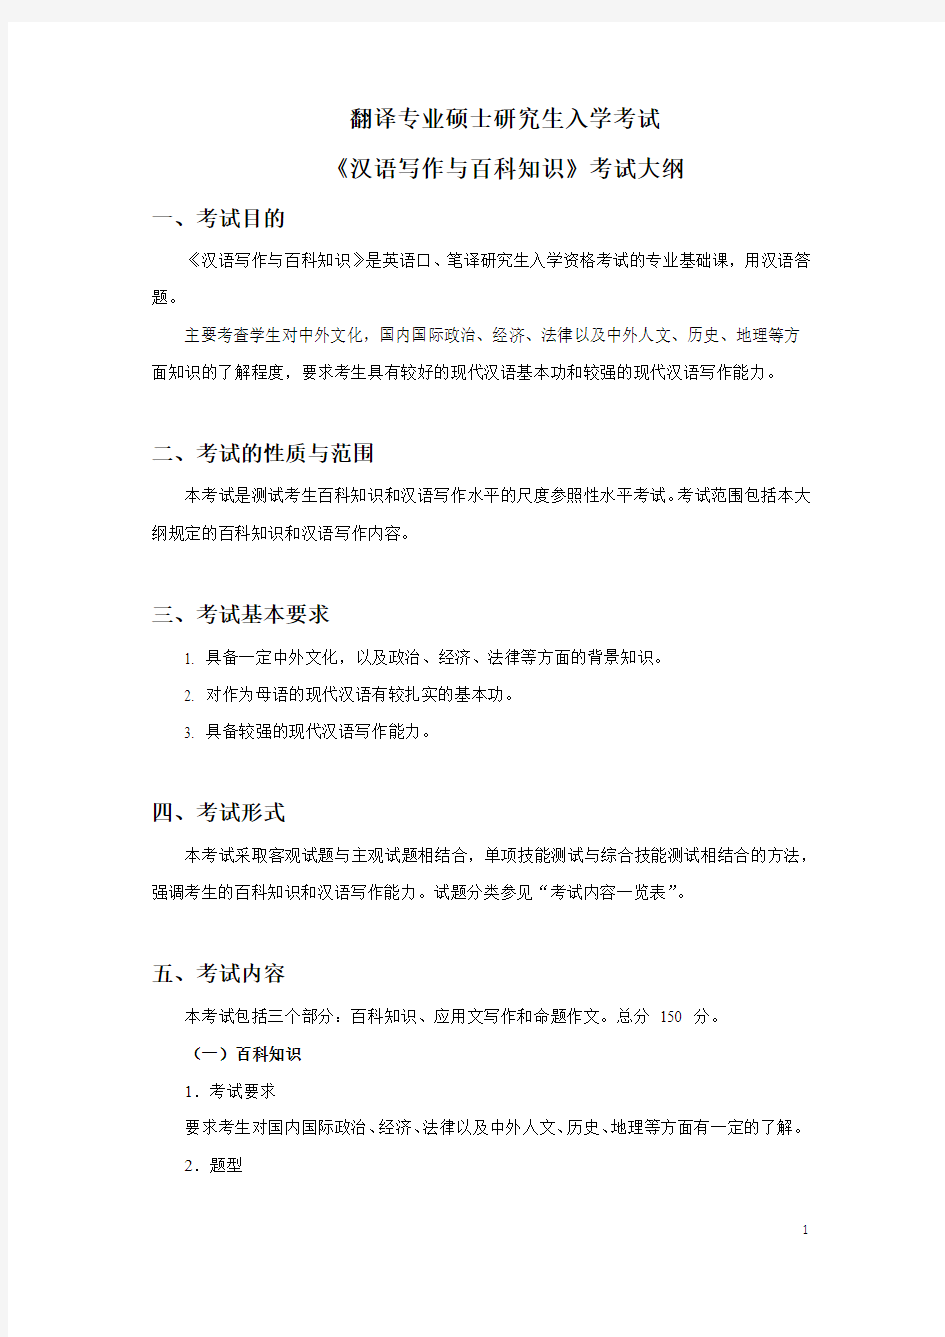 翻译专业硕士研究生入学考试《汉语写作与百科知识》考试大纲